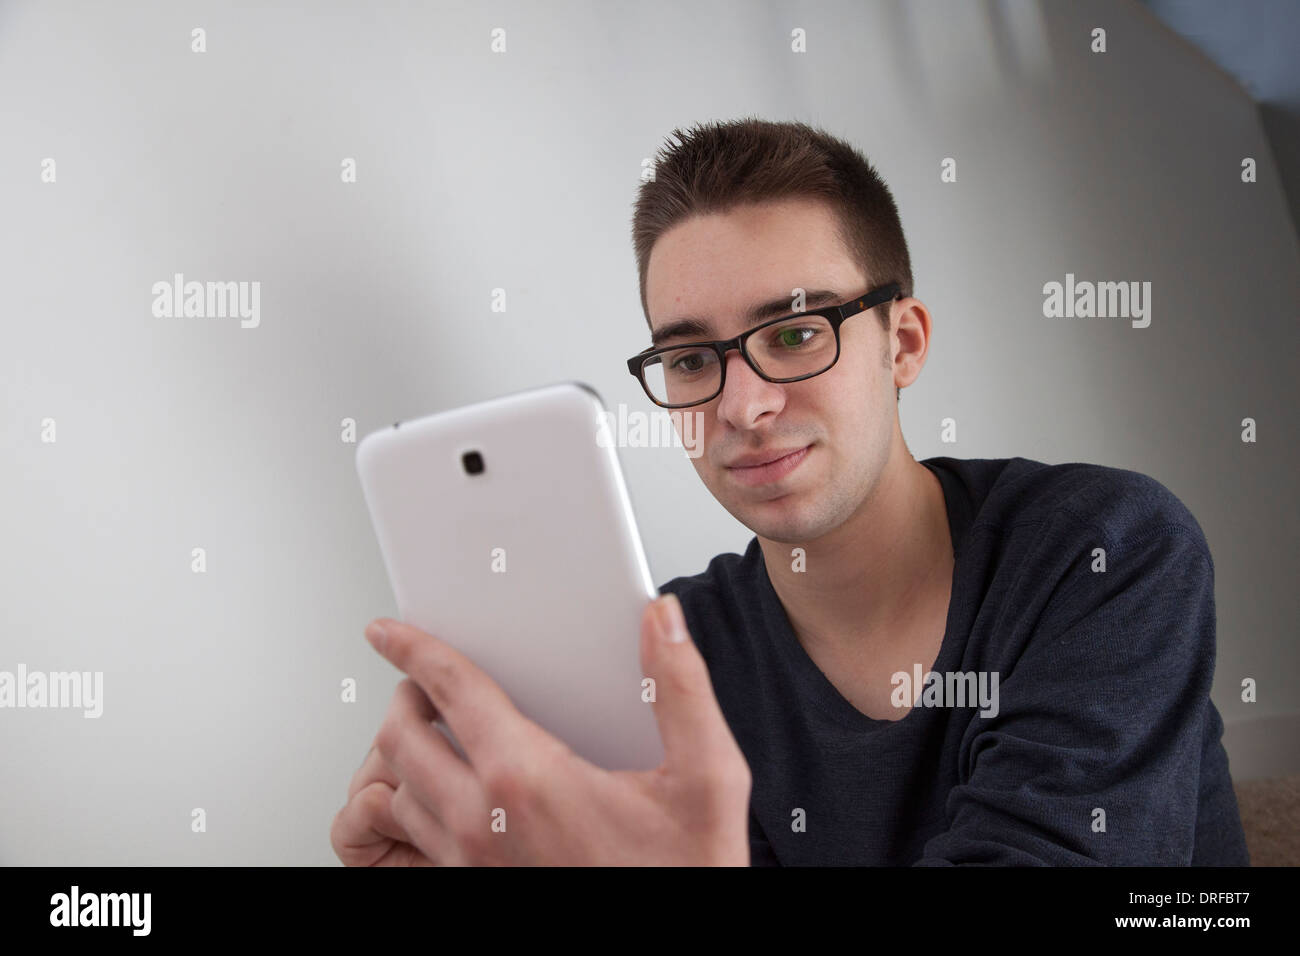 Gut aussehender junger Mann mit Brille, hält eine weiße digitale-Tablette. Form, mit textfreiraum Landschaft. Stockfoto